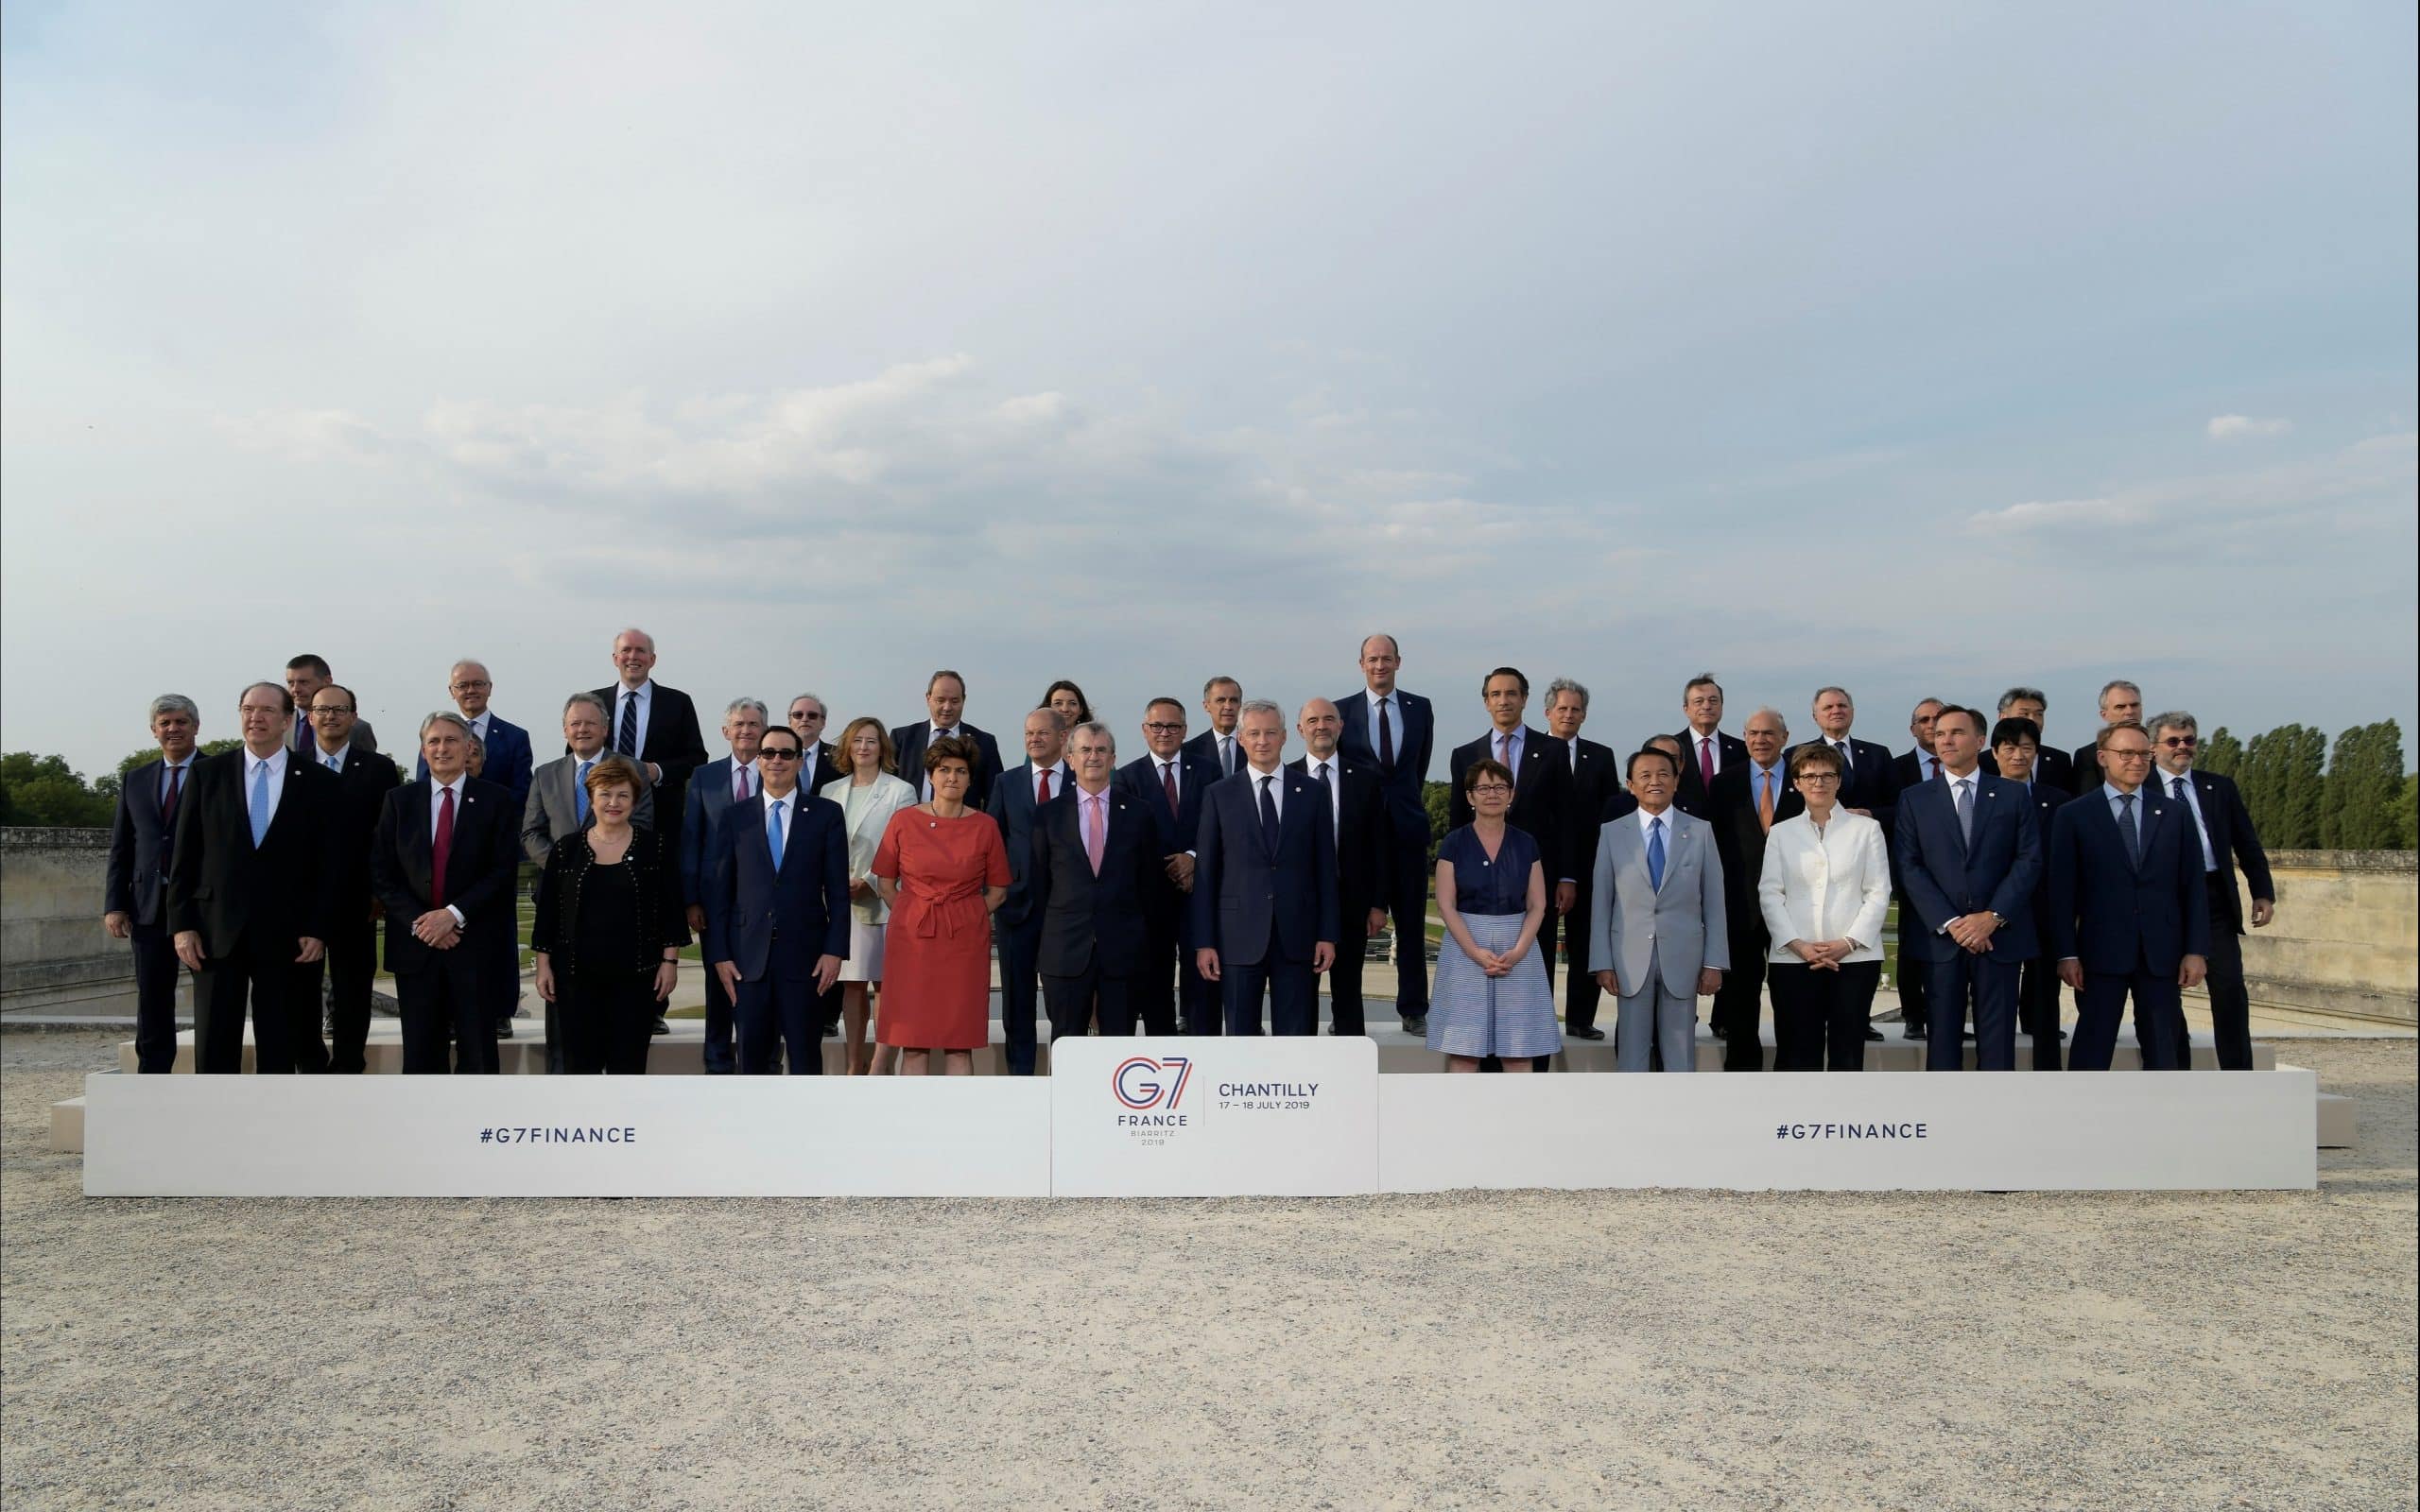 Les ministres de finances du G7 lors de leur réunion à Chantilly en France en juillet 2019